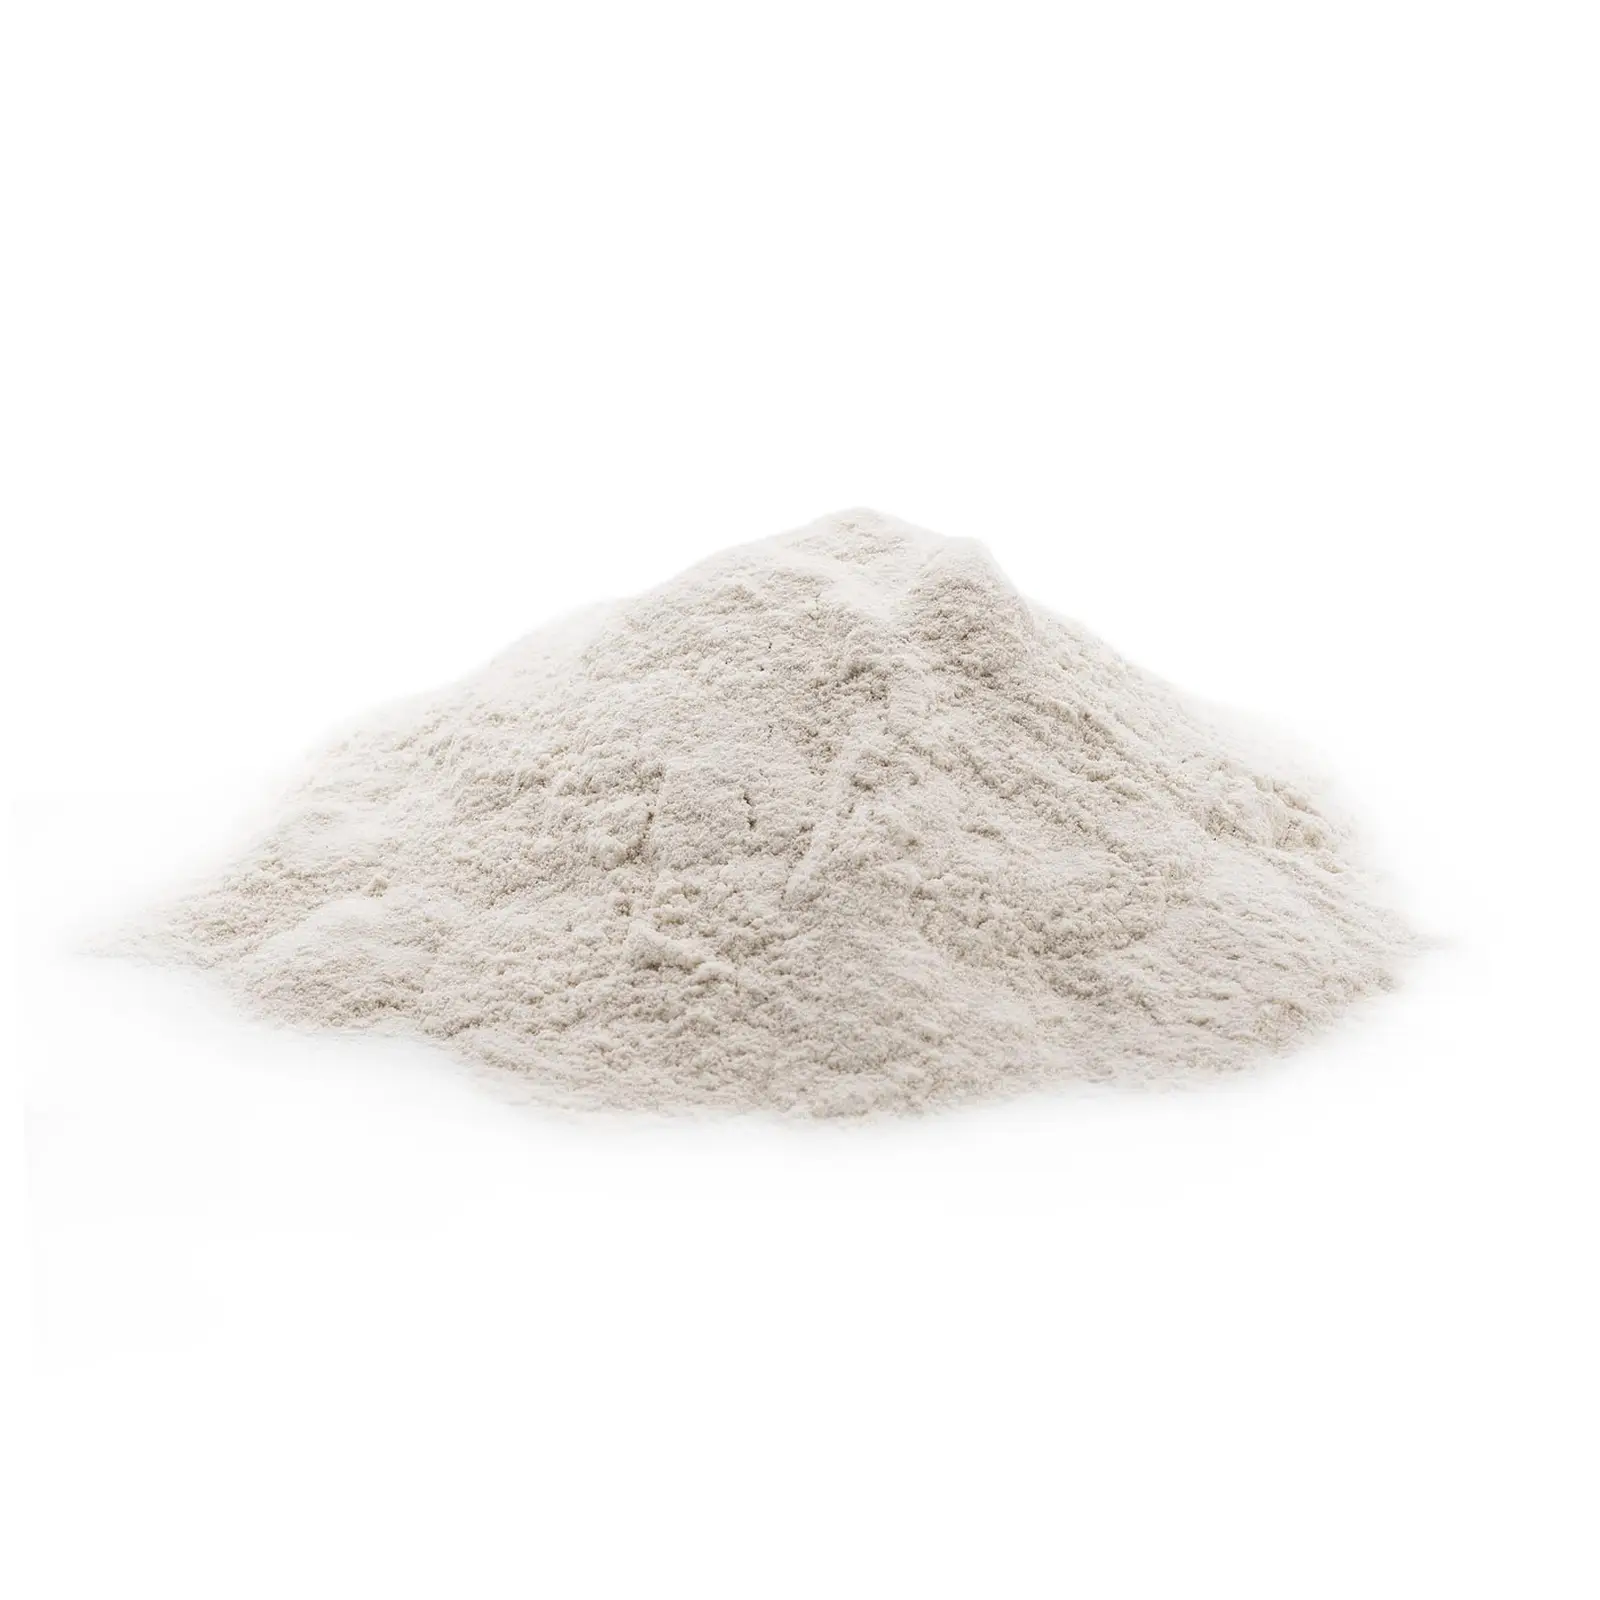 Klej do produkcji pelletu - 20 kg - skrobia pszenna - 5,5-7,5 pH